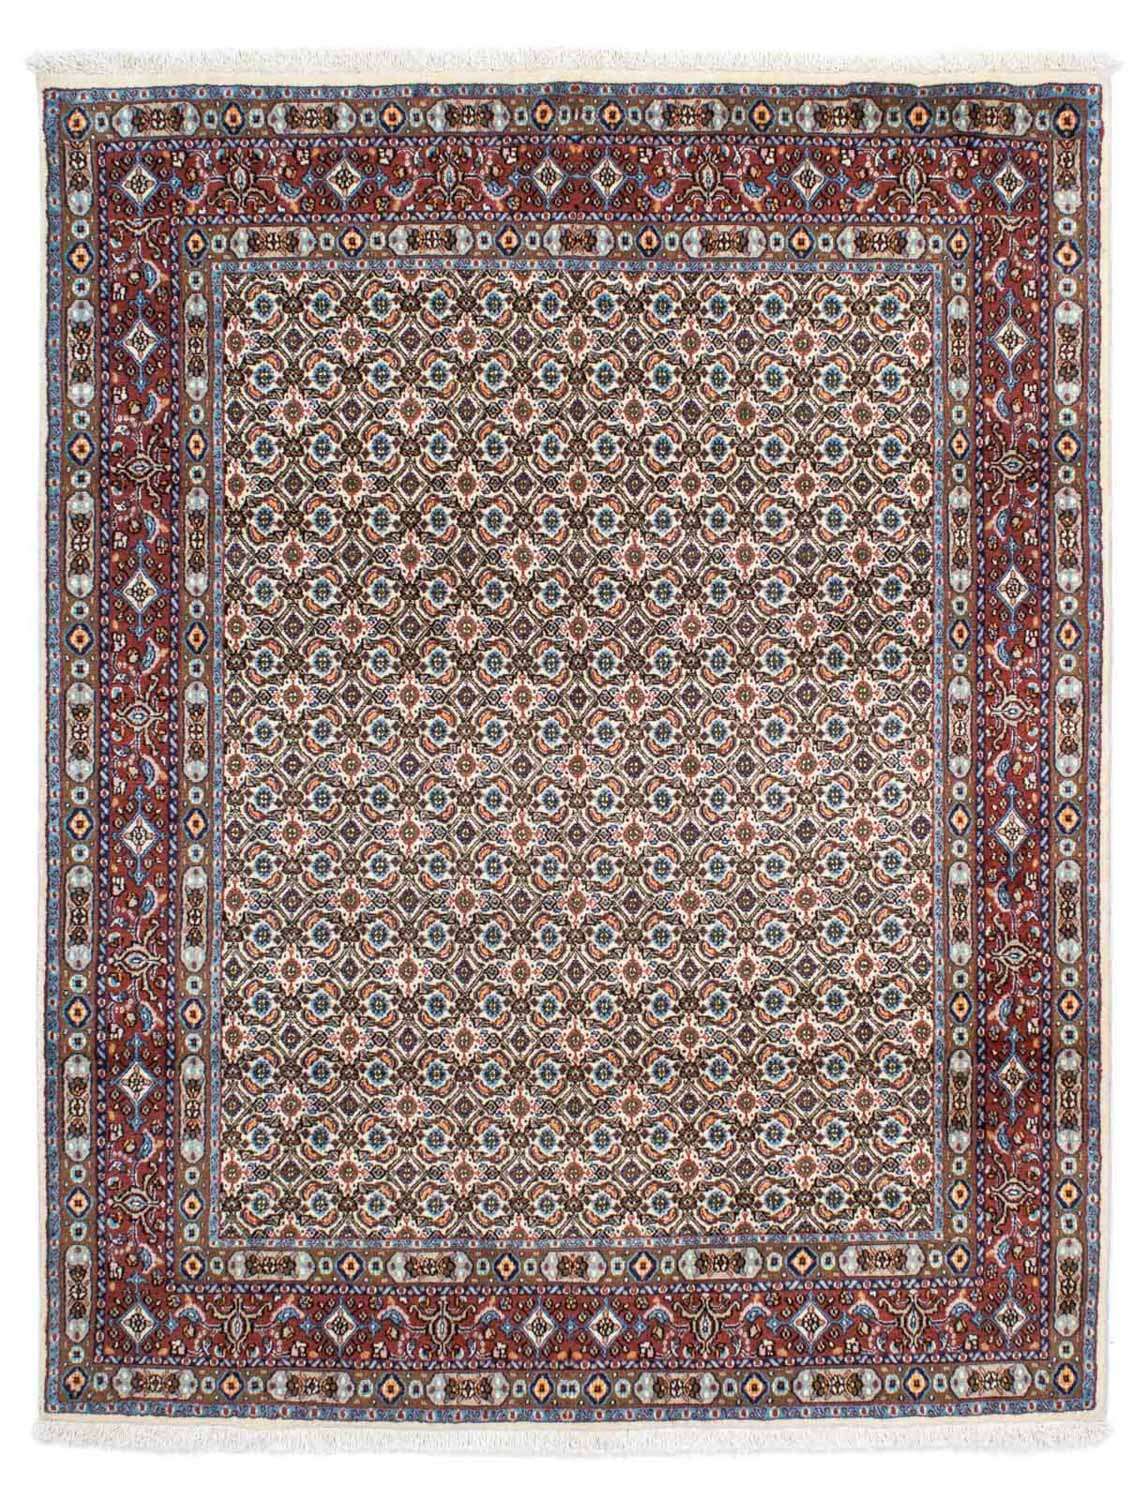 Tapis persan - Classique - 196 x 147 cm - beige